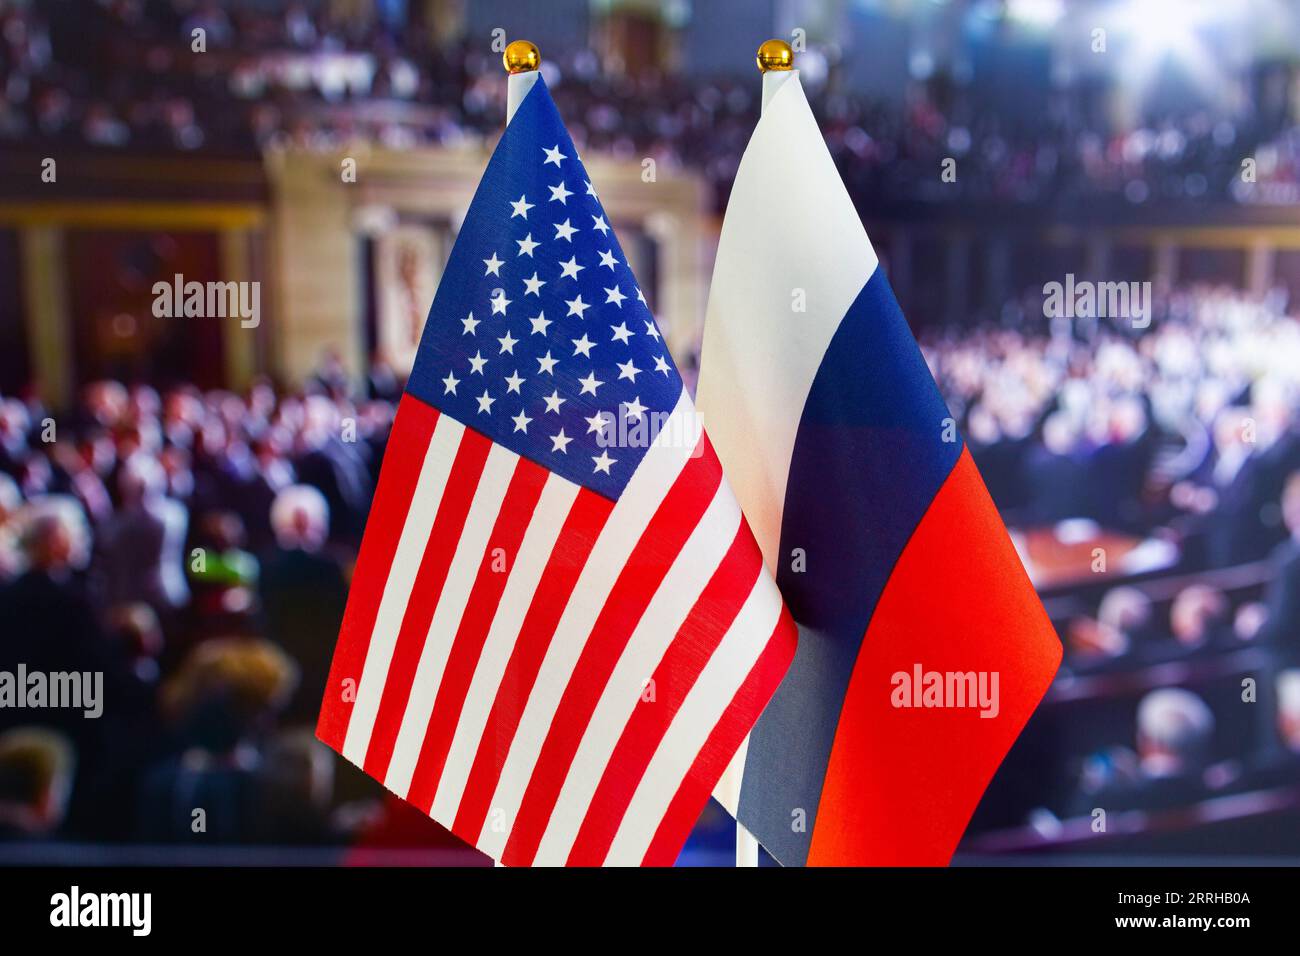 Die US-Flagge, die russische Flagge. Flagge der USA, Flagge Russlands. Die Vereinigten Staaten von Amerika und die Russische Föderation Konfrontation. Russlands Invasion Stockfoto